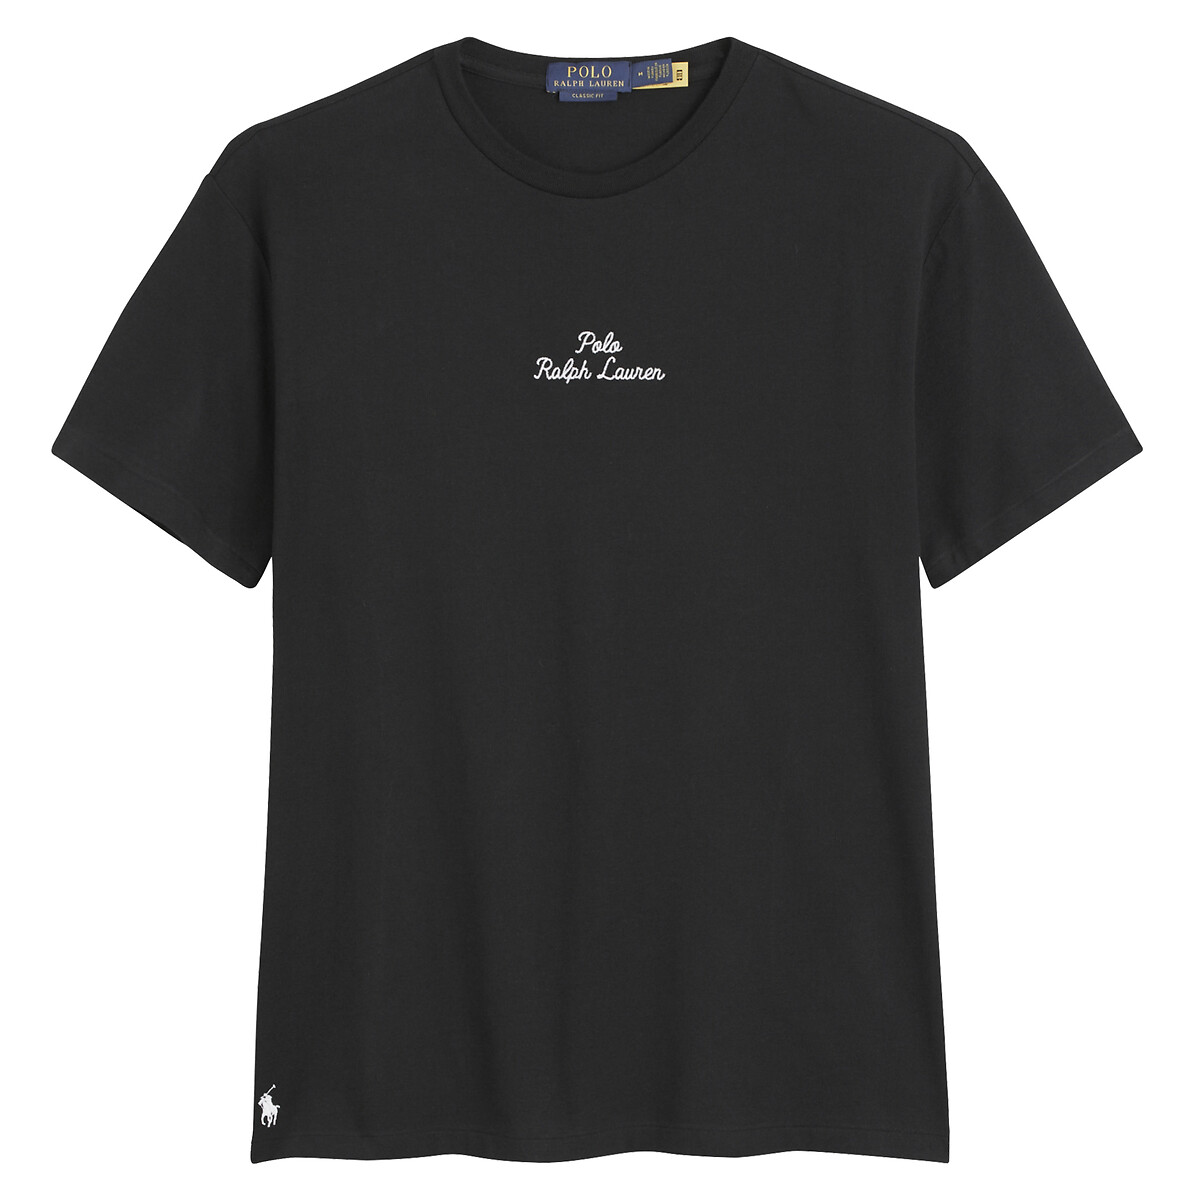 Футболка прямого покроя с логотипом XL черный футболка прямого покроя daya